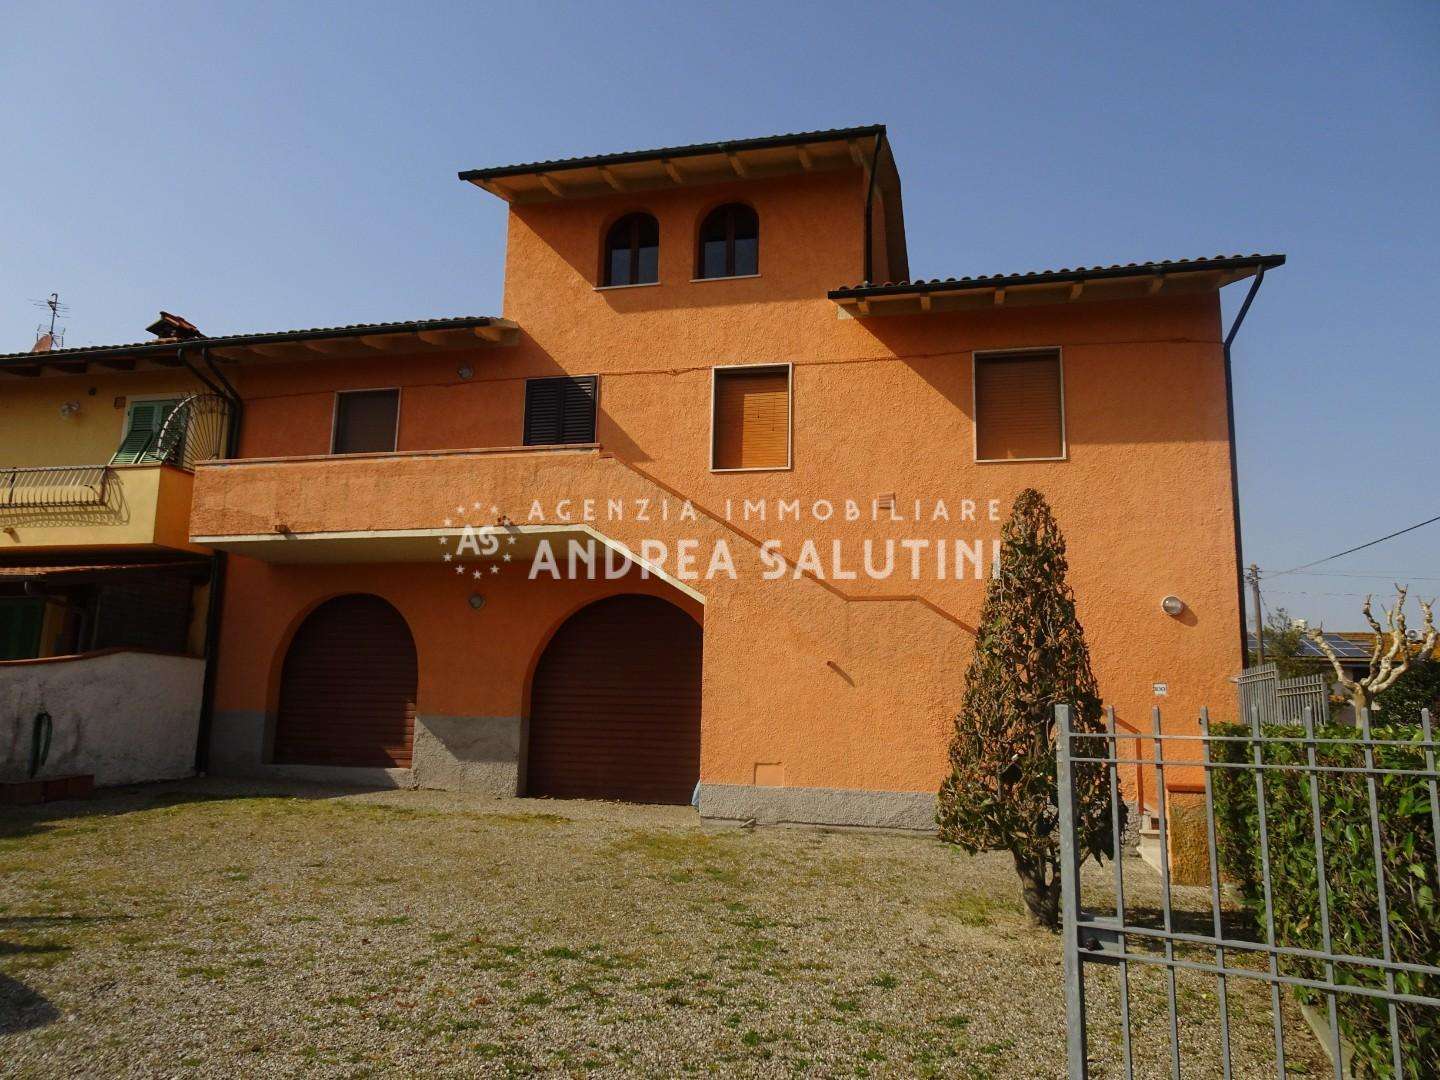 Palazzo - Stabile in Vendita a Santa Maria a Monte Via Firenzuola, 102